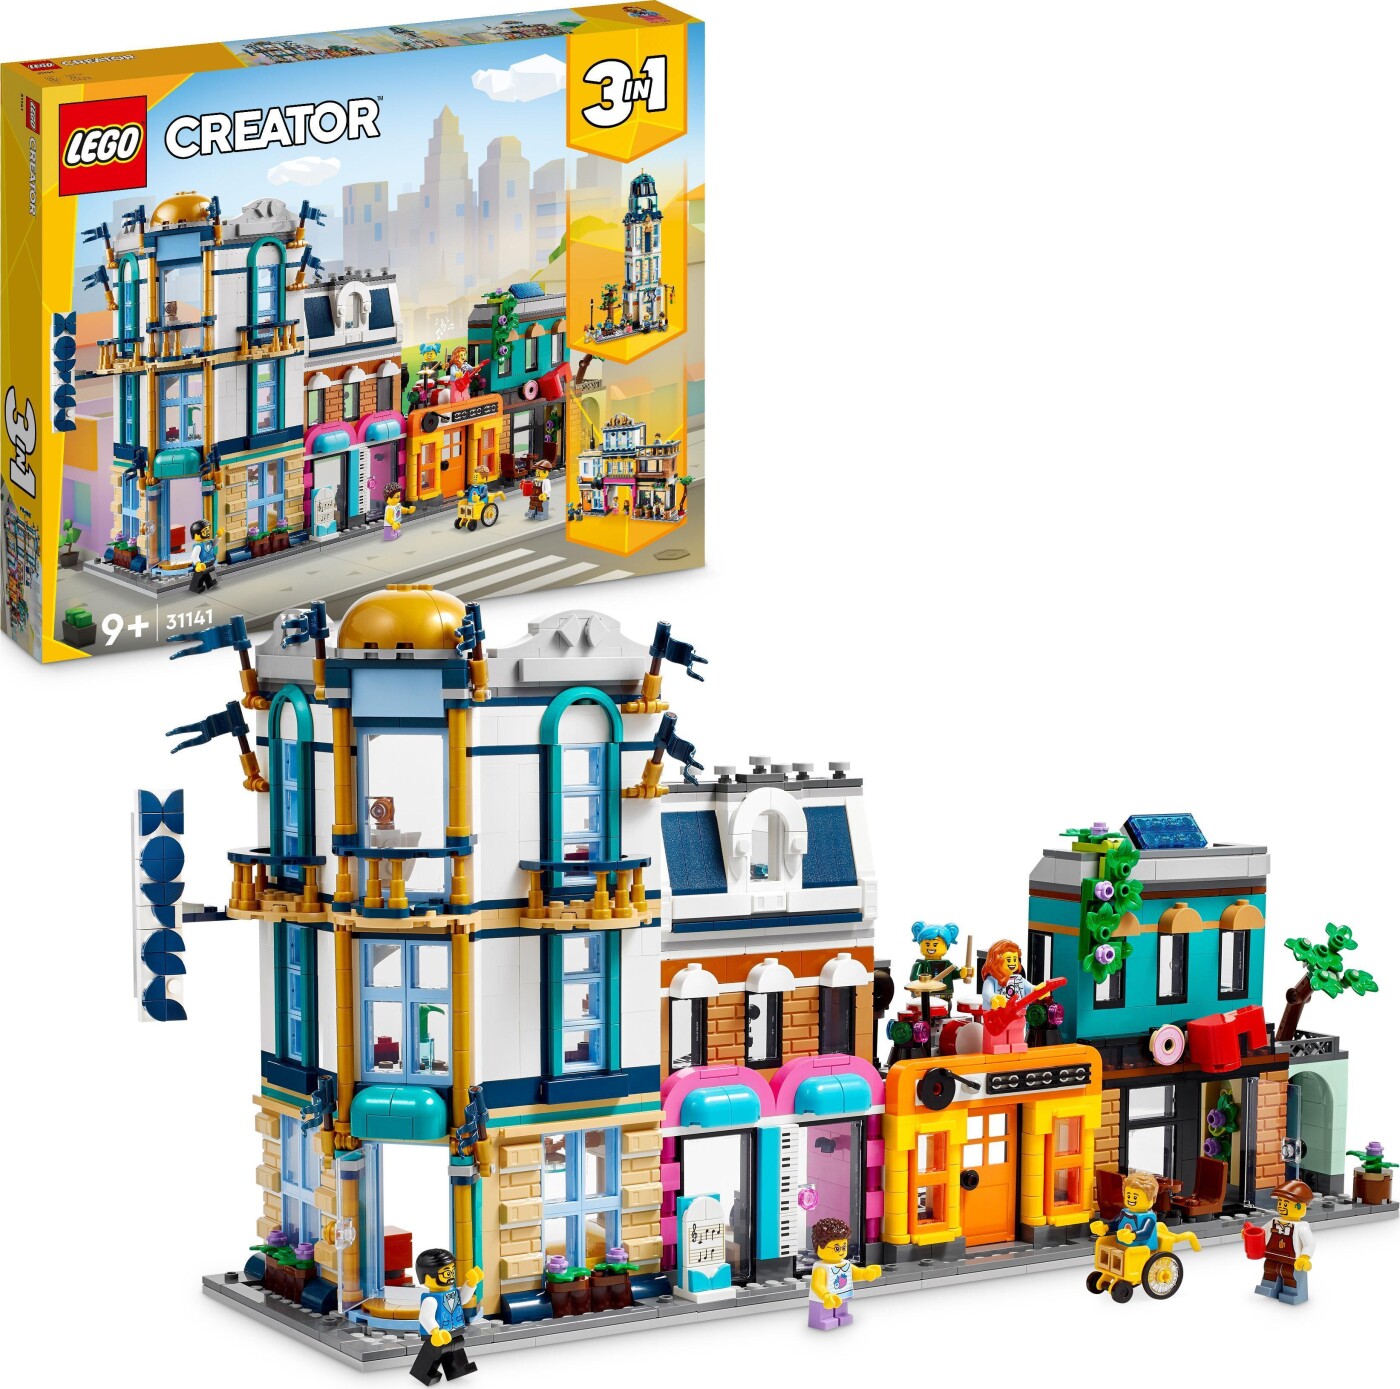 Billede af Lego Creator 3-in-1 - Hovedgade - 31141 hos Gucca.dk